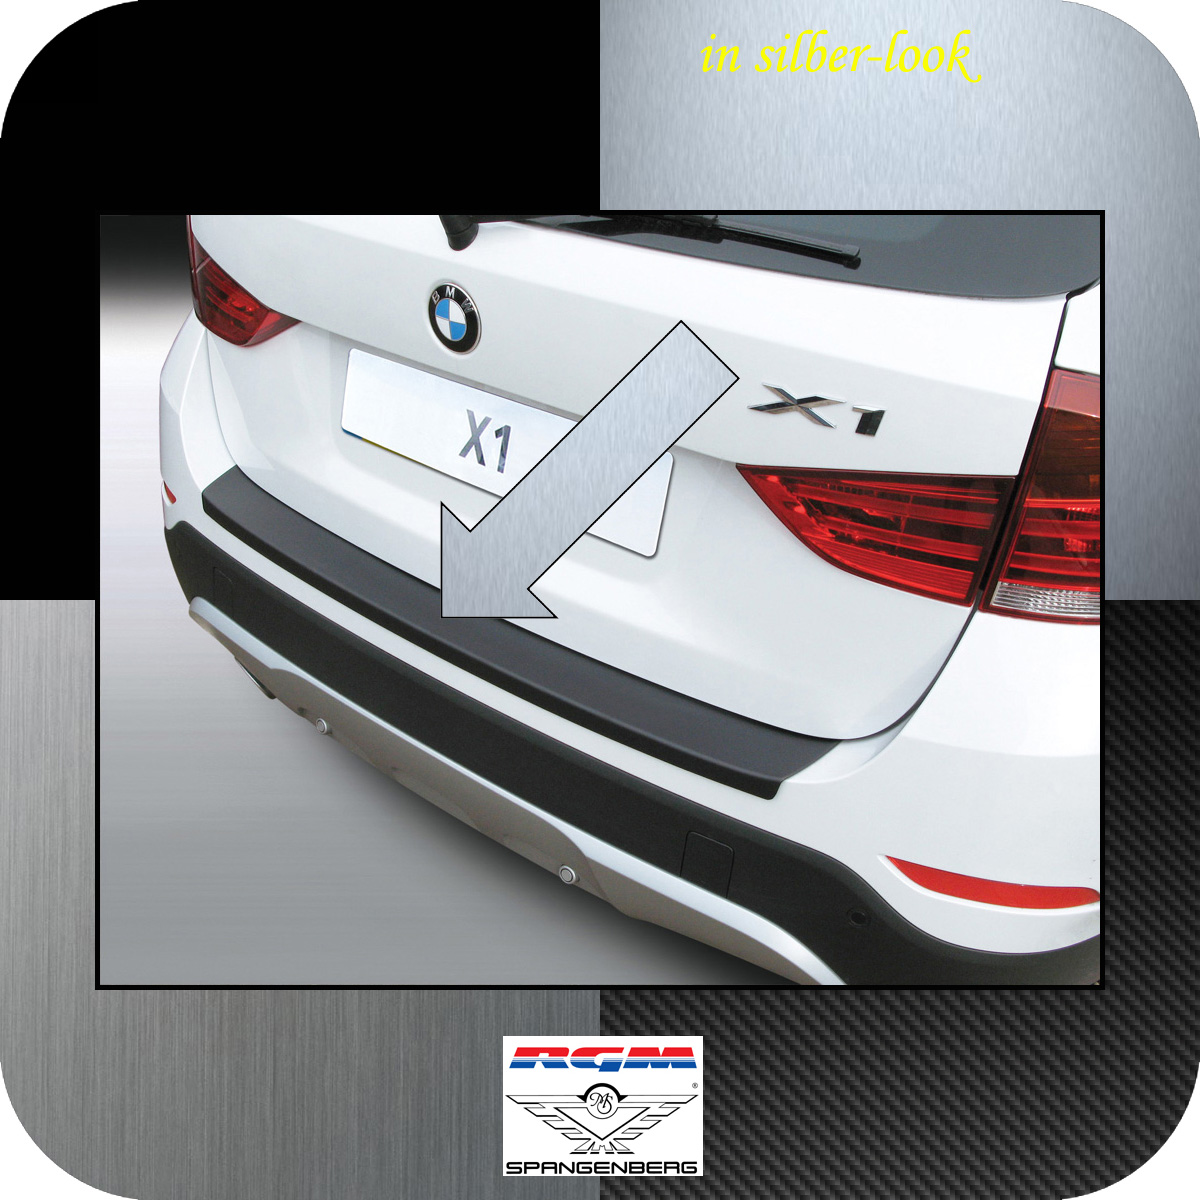 Ladekantenschutz Edelstahl MATT kompatibel für BMW X1 E84 2009-2012 vor LCI, mit Abkantung